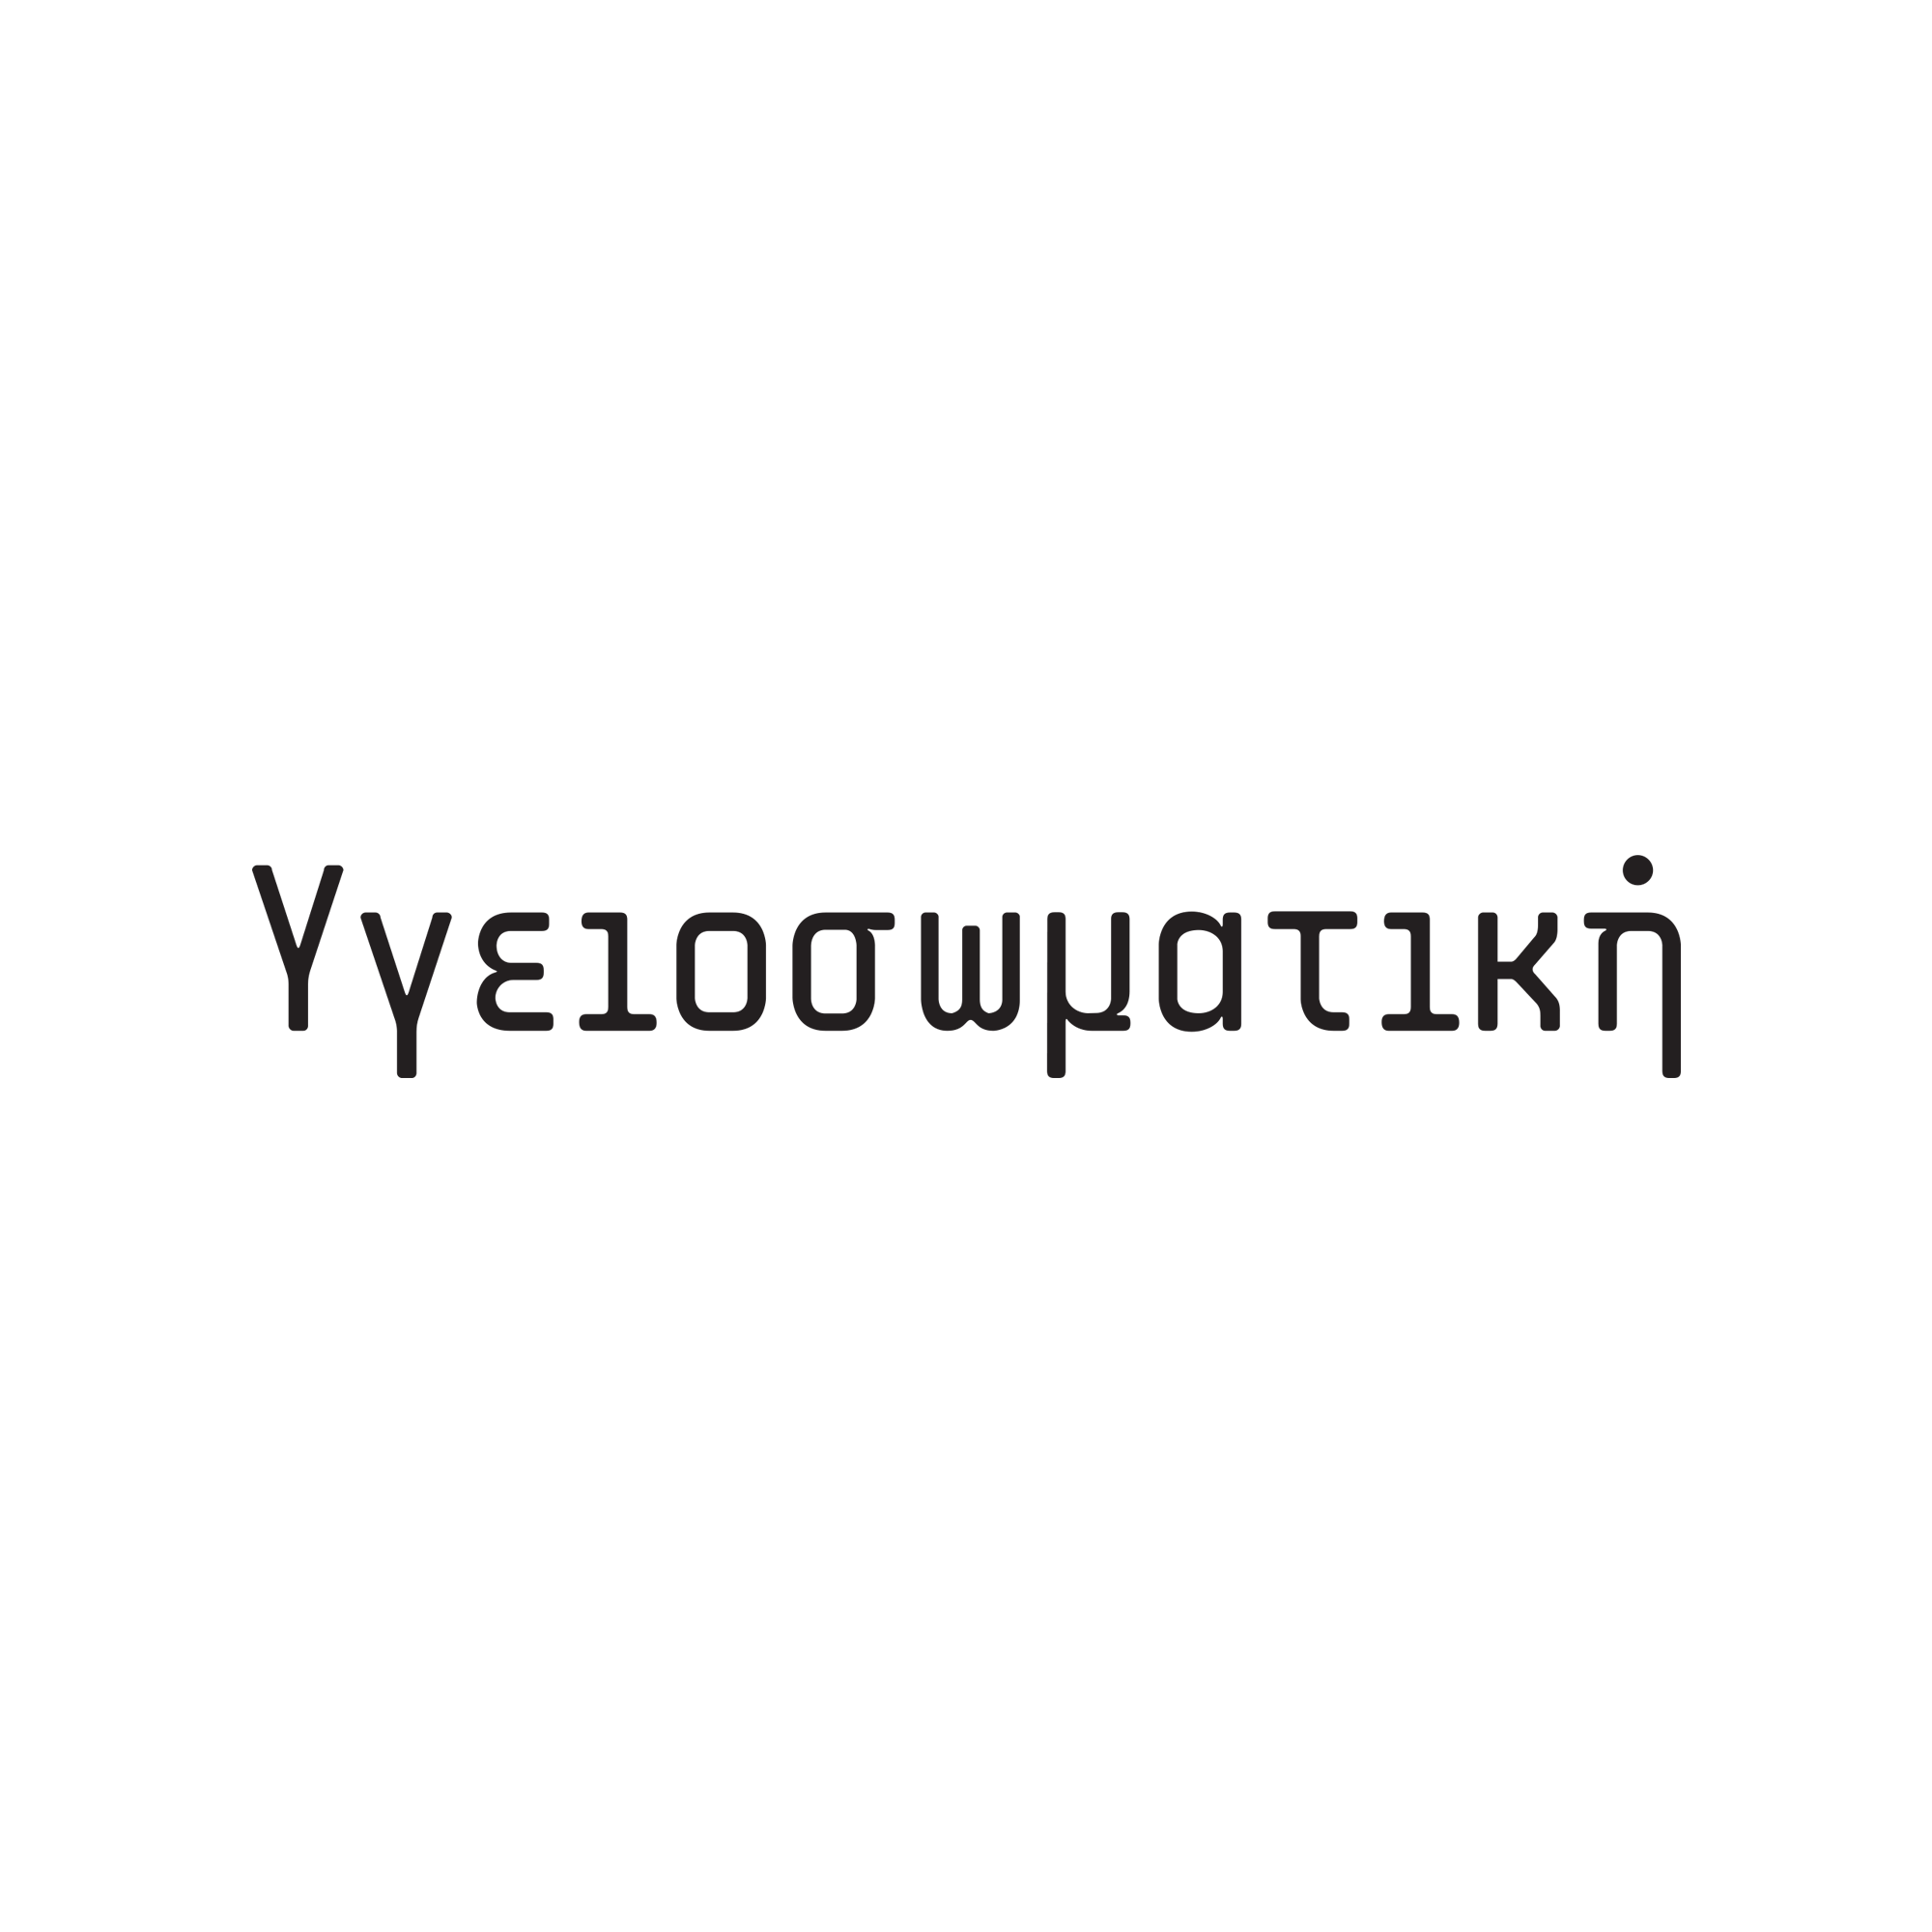 ΥΓΕΙΟΣΩΜΑΤΙΚΗ logo